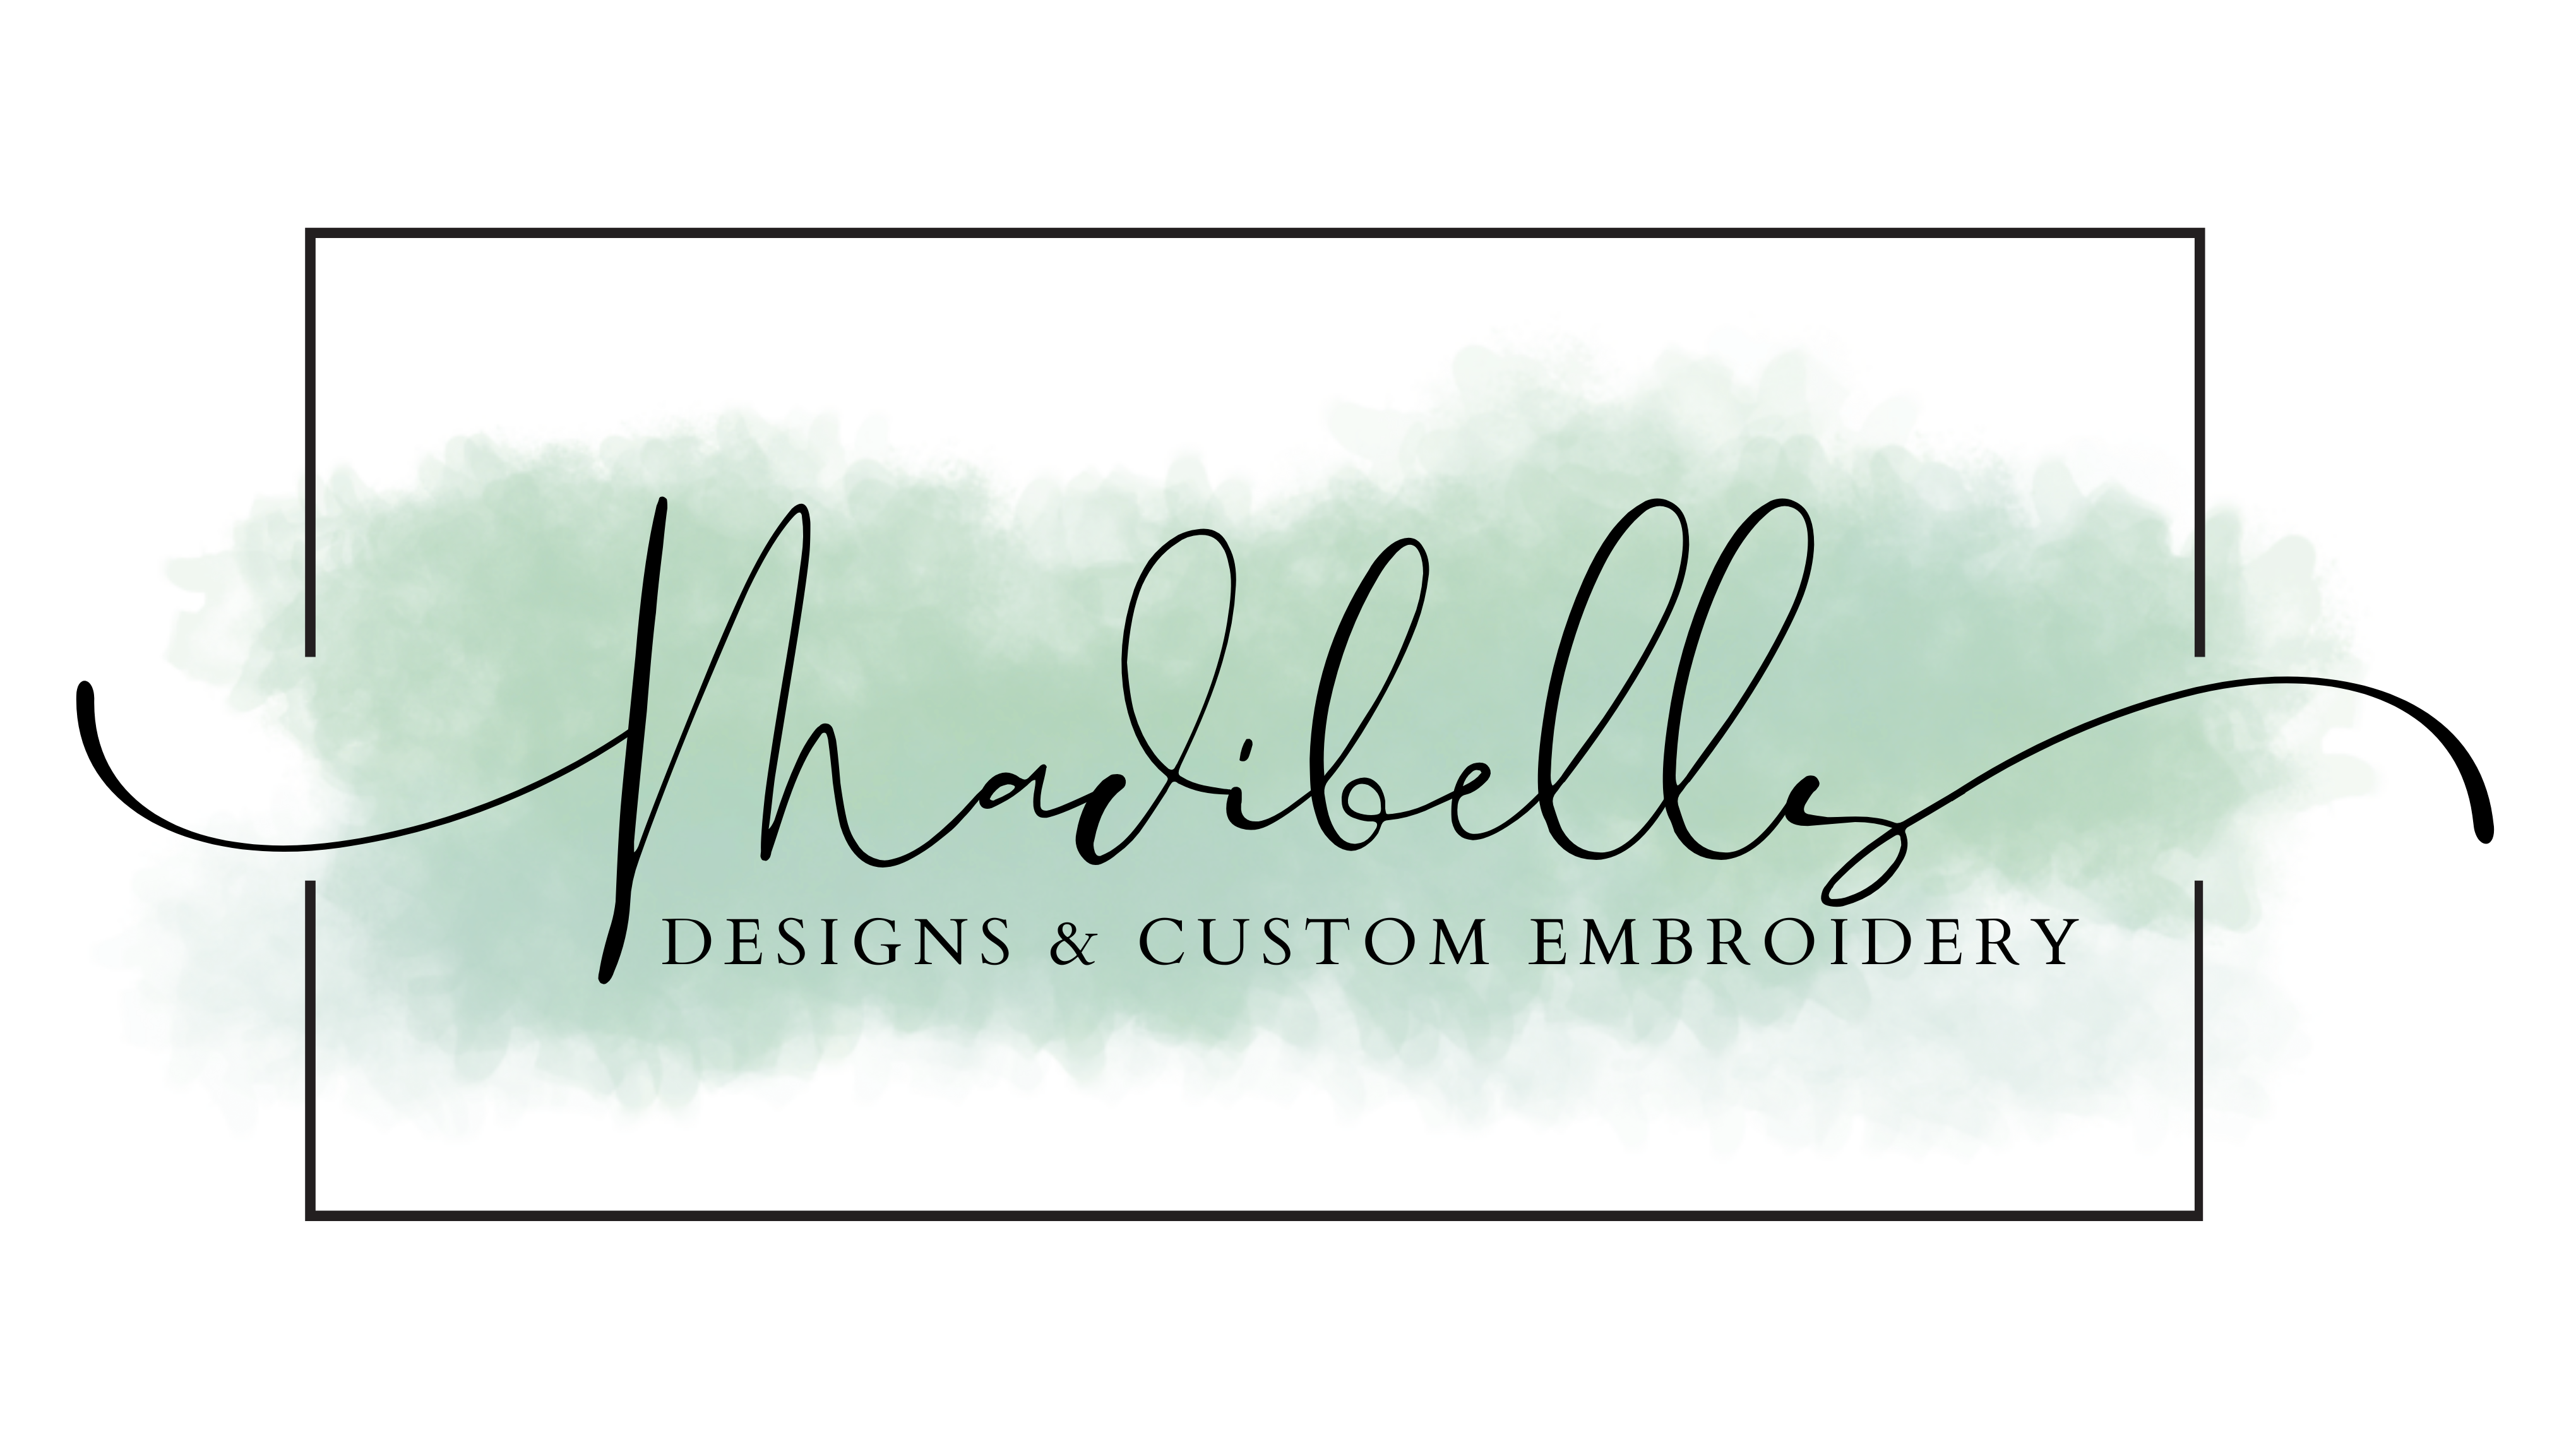 Madibells Designs & Custom Embroidery